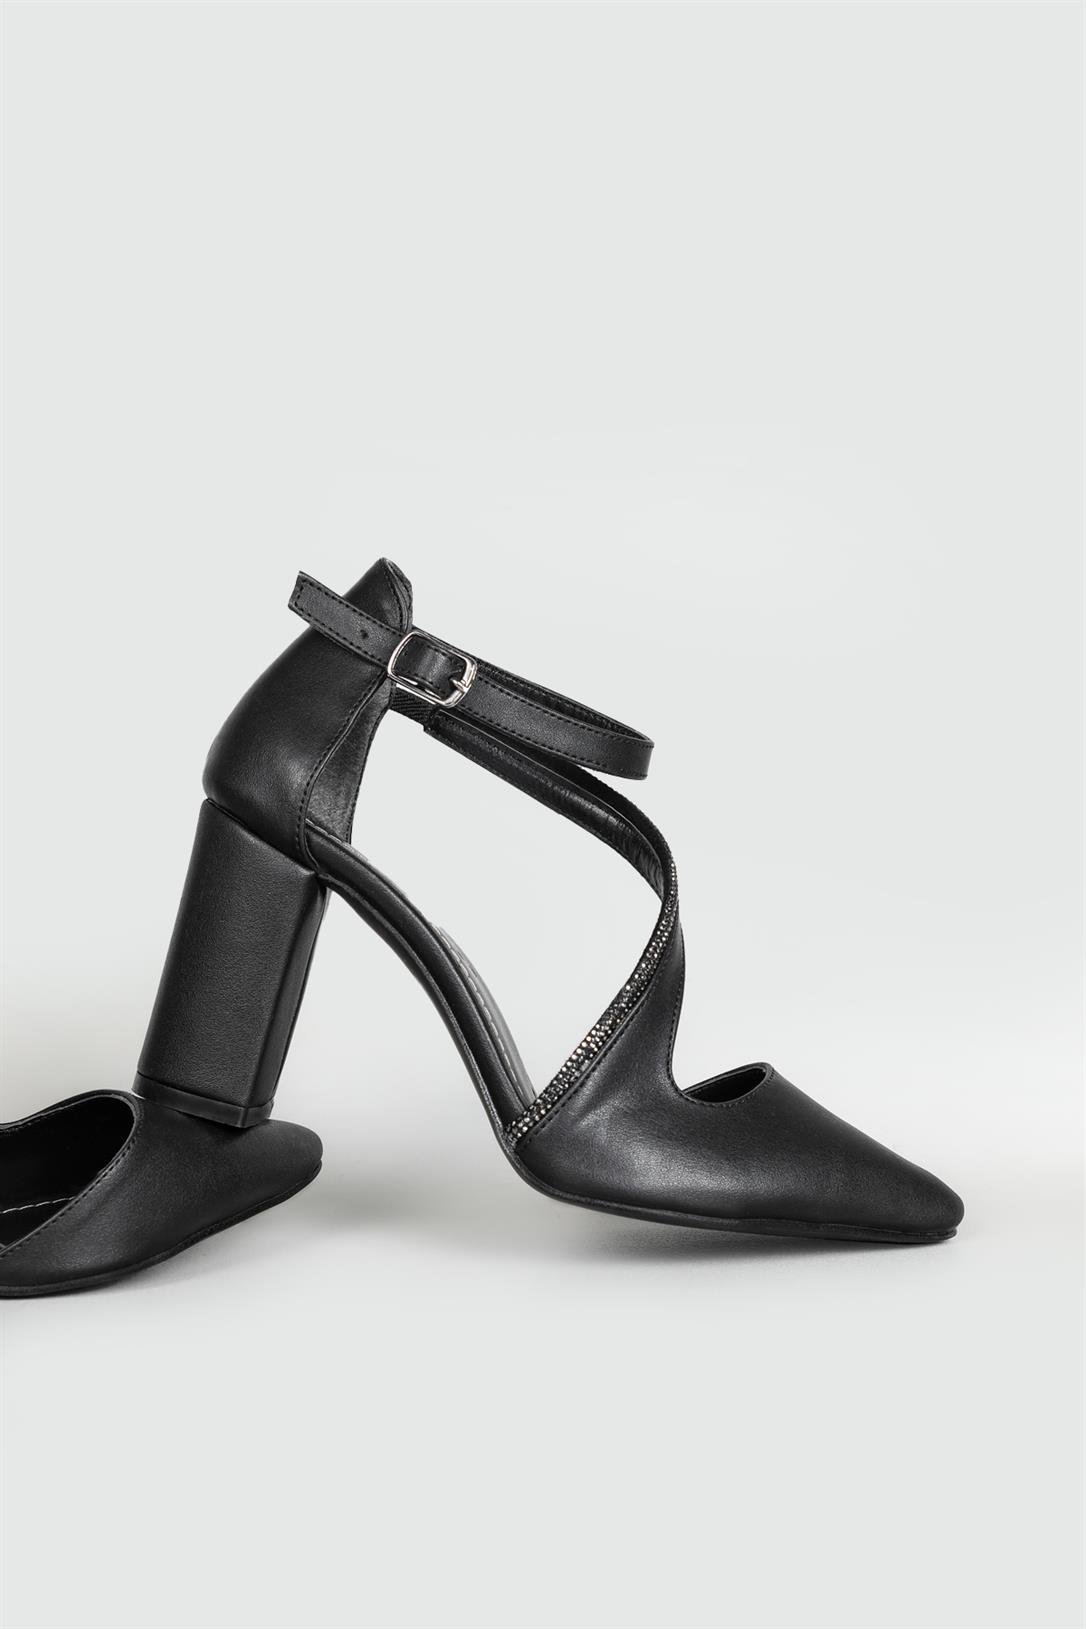 FELES Önden Taş Bantlı Kadeh Topuklu Siyah Kadın Ayakkabı 18-108 | Ayakkabı  City